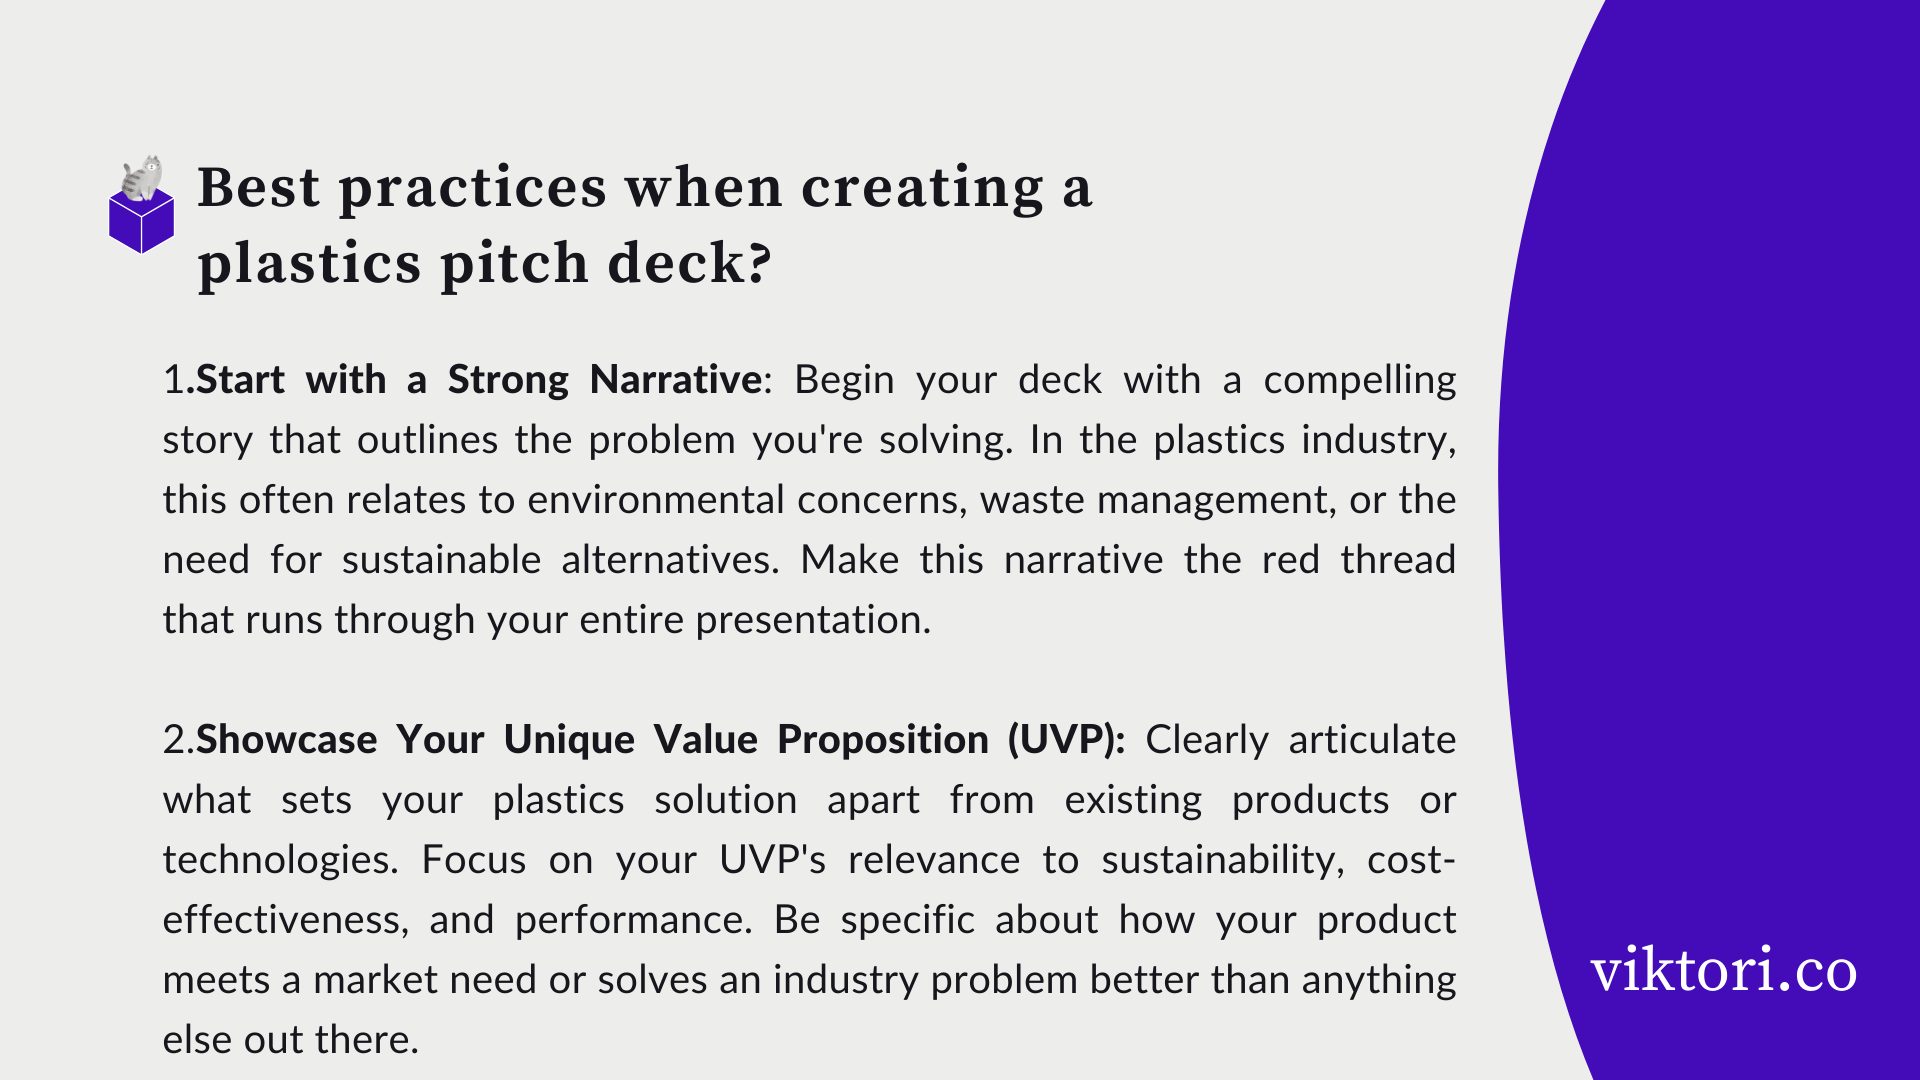 Plastics Pitch Deck: Best Practices